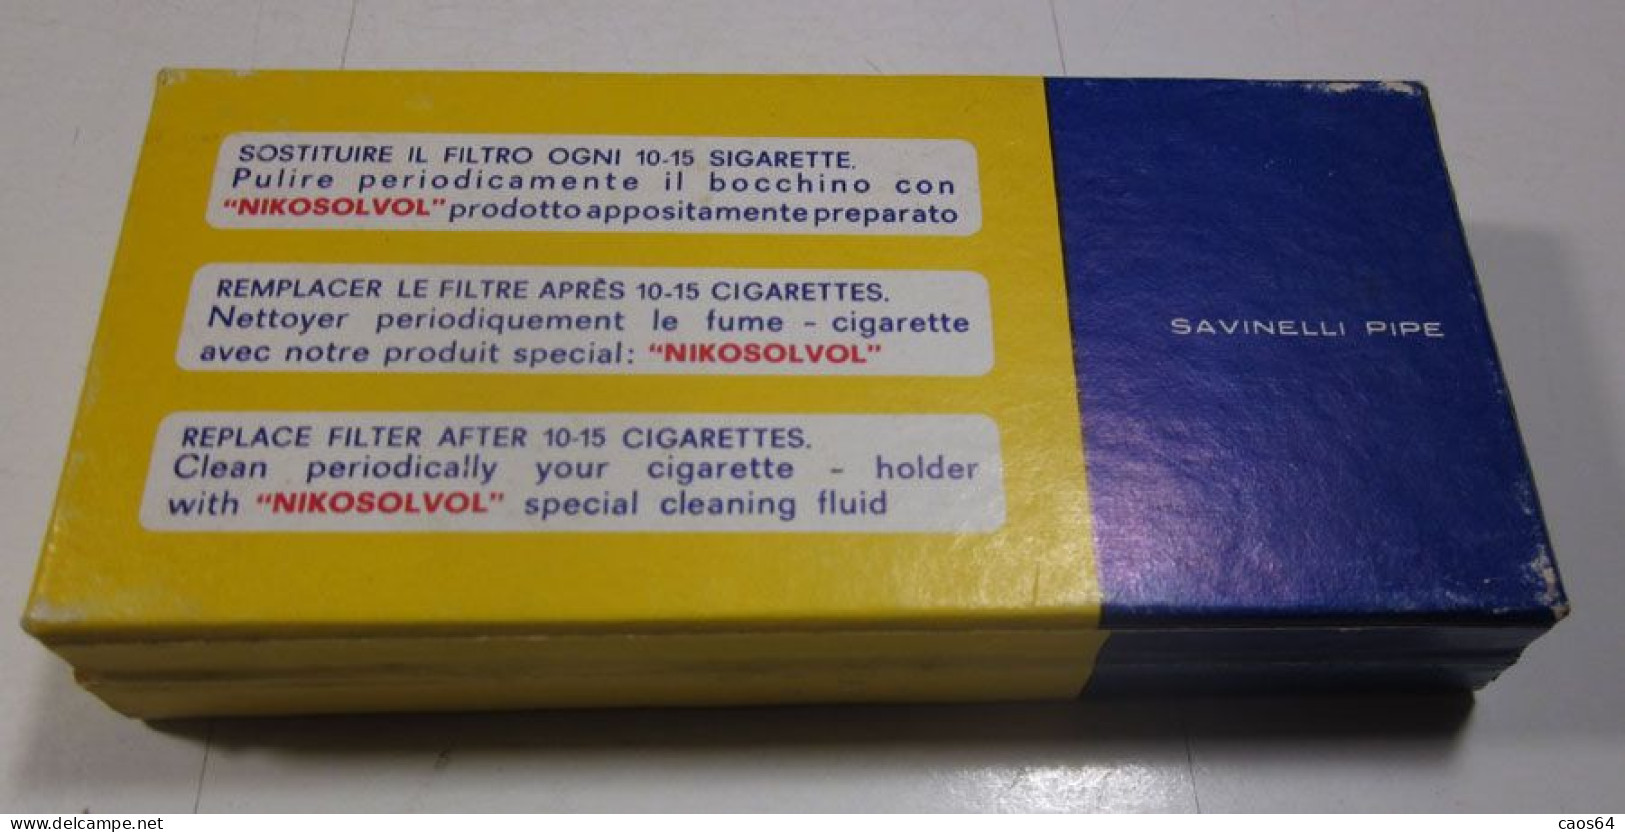 NO - NIK Filtri Filtres Filters Savinelli Pipe Italy Con Bocchino Vintage - Sigarettenhouders